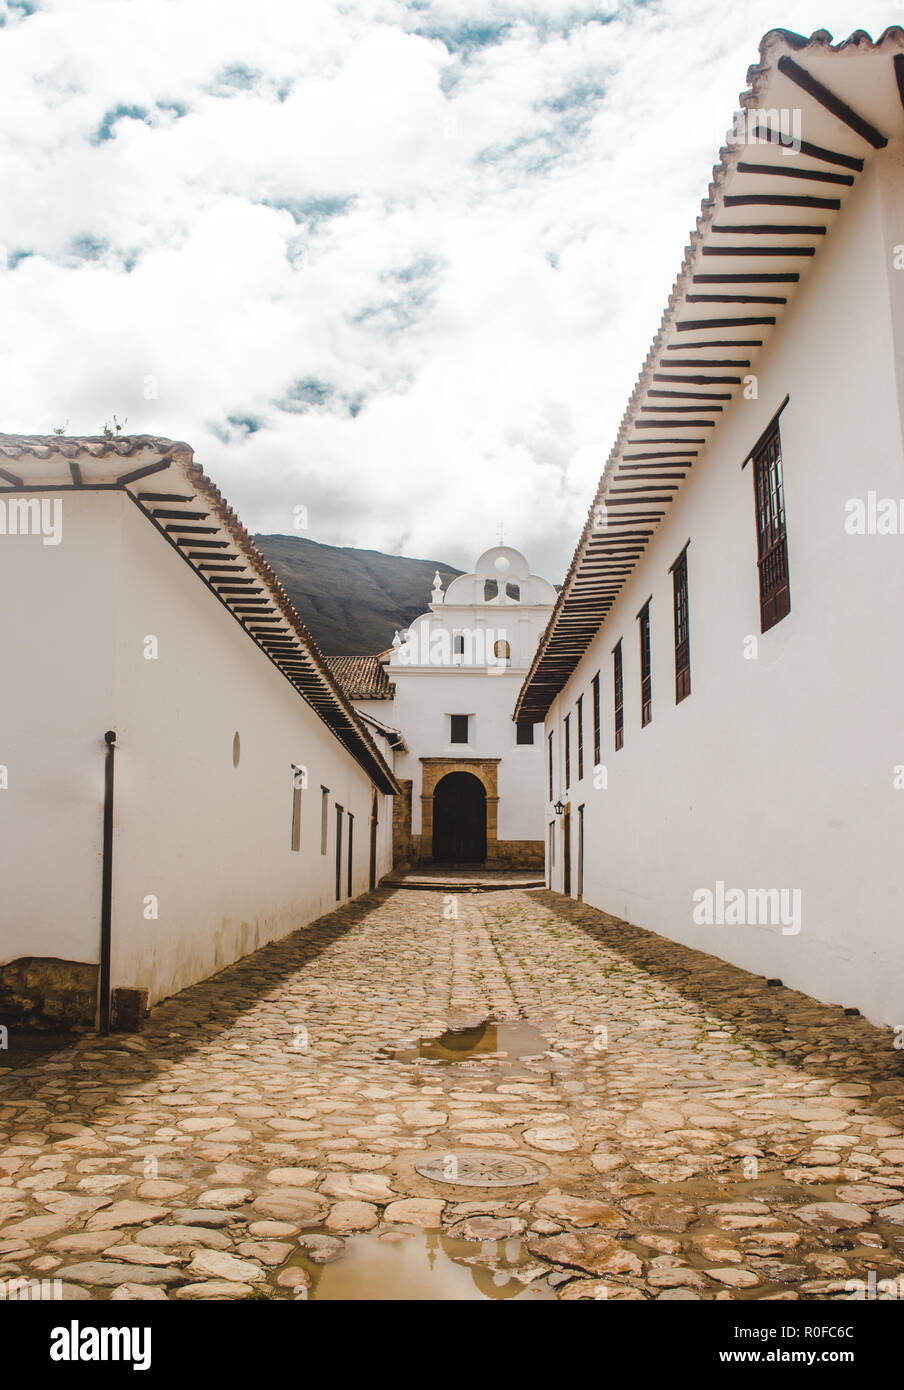 L'architecture coloniale espagnole typique à Villa de Leyva, un authentique pueblo / petite ville et destination touristique populaire dans la province de Colombie Banque D'Images